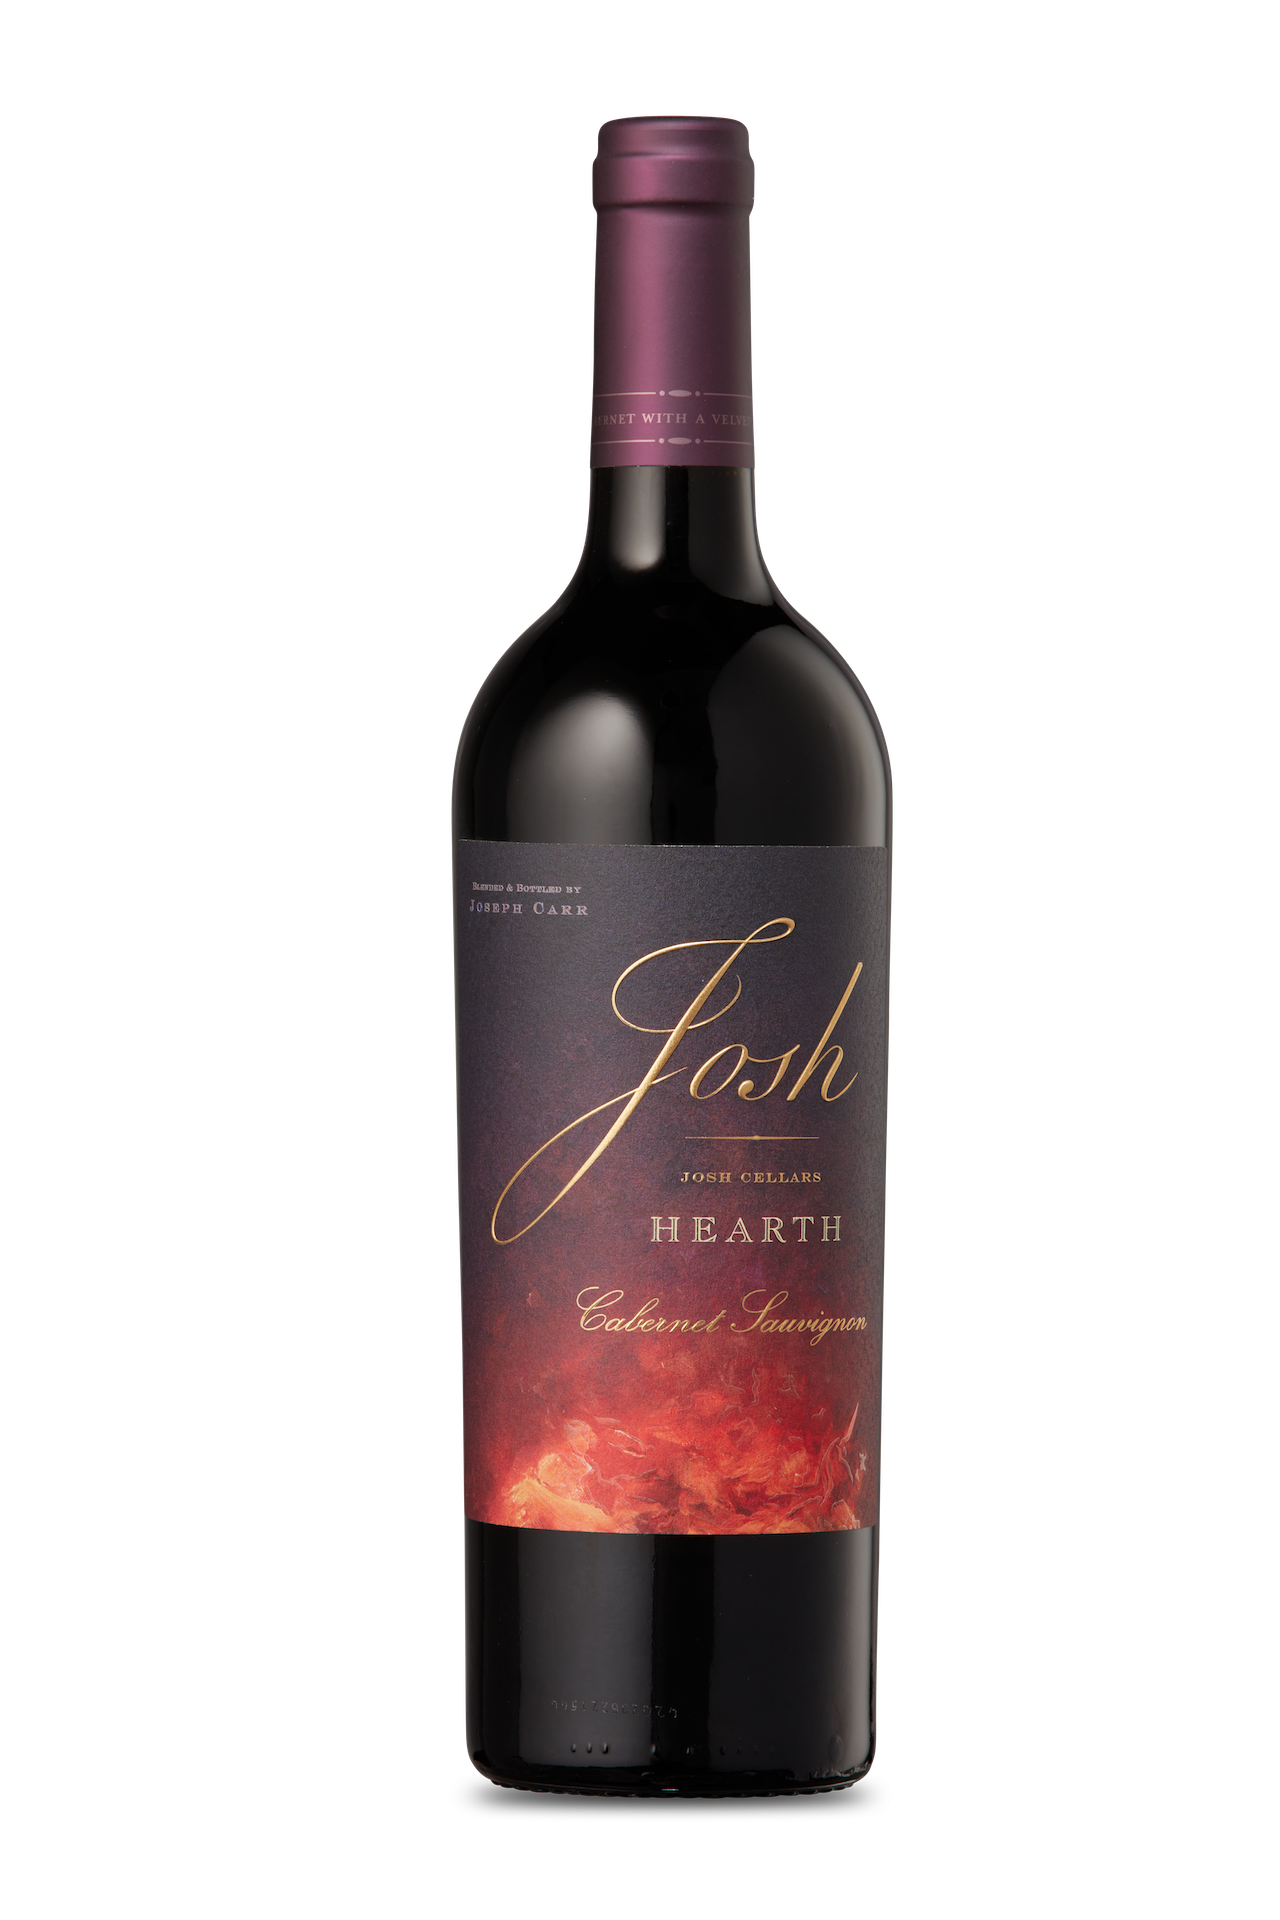 Josh Cellars Hearth Cabernet Sauvignon California - Red Wine from California - 750ml Bottle